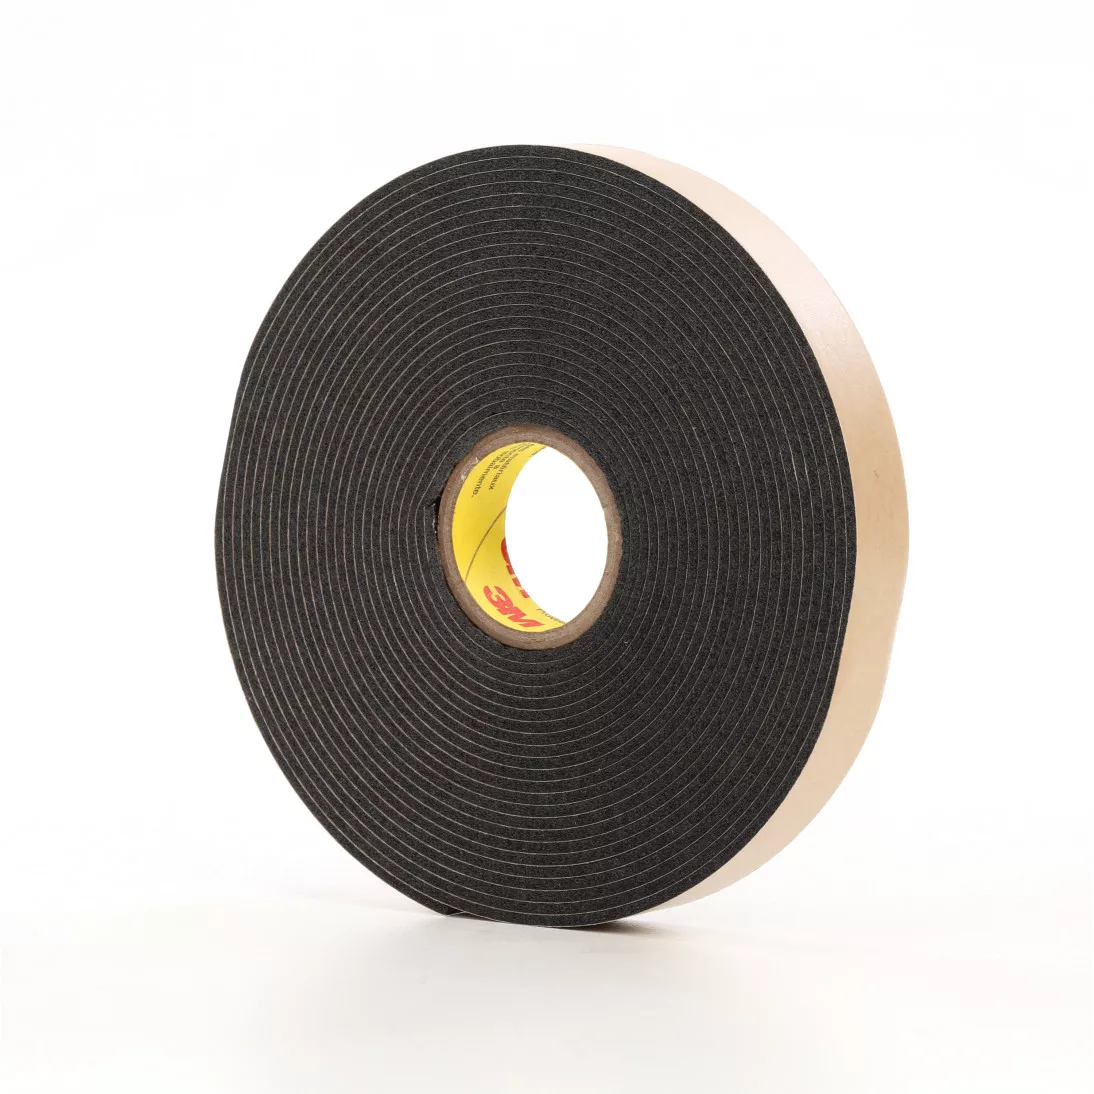 3M™ Double Coated Polyethylene Foam Tape 4496B, Black, 1/4 in x 36 yd,
62 mil, 36 rolls per case